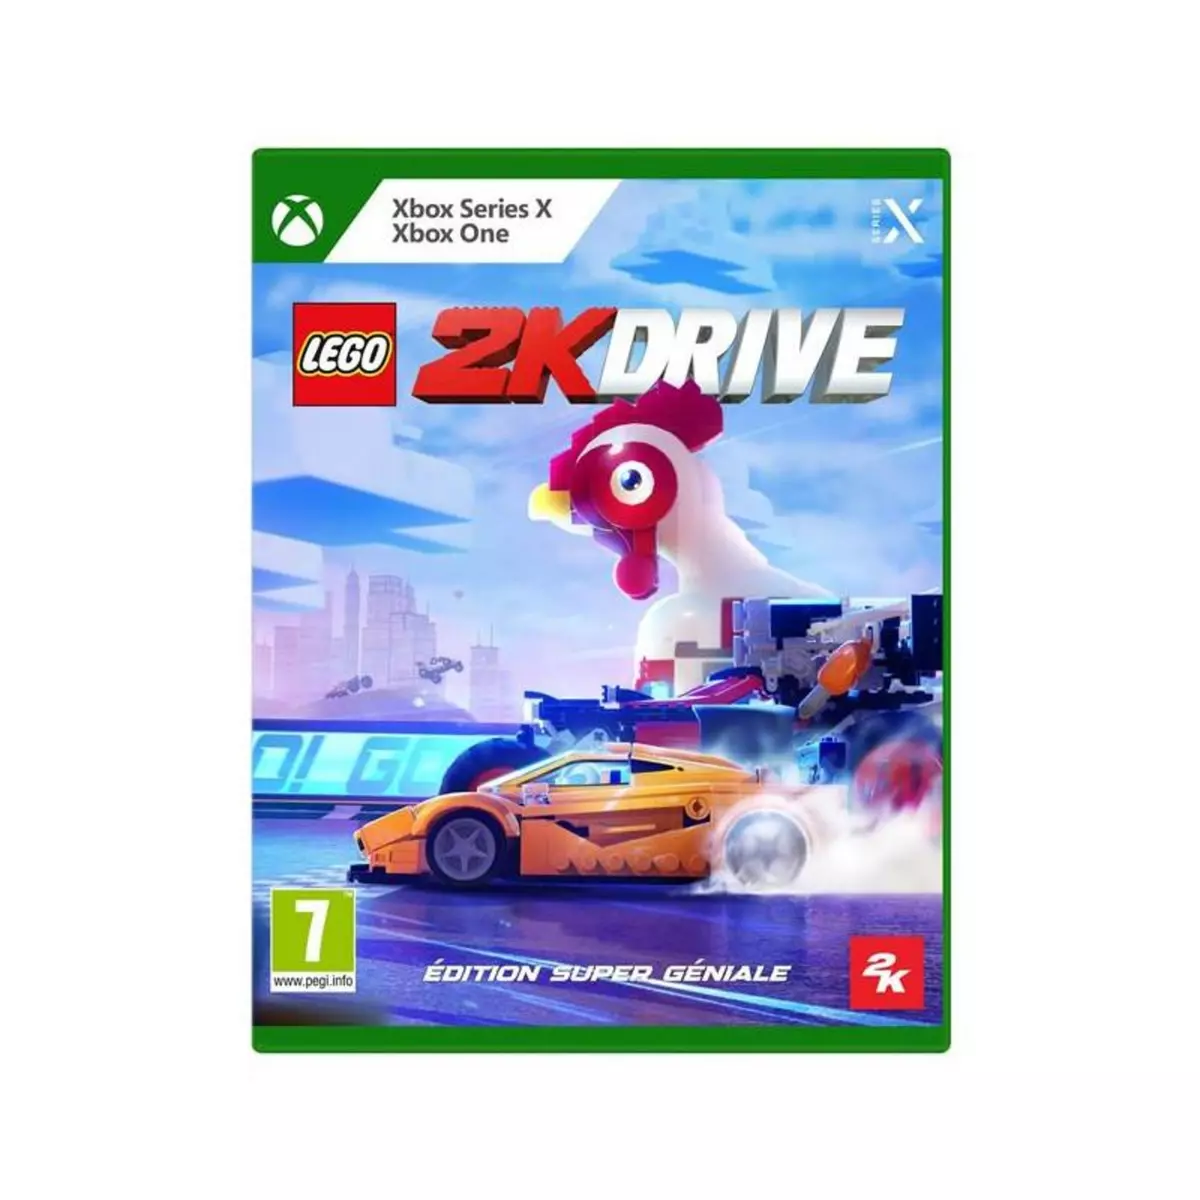 2K Games Lego® 2K Drive Edition Super Géniale Xbox